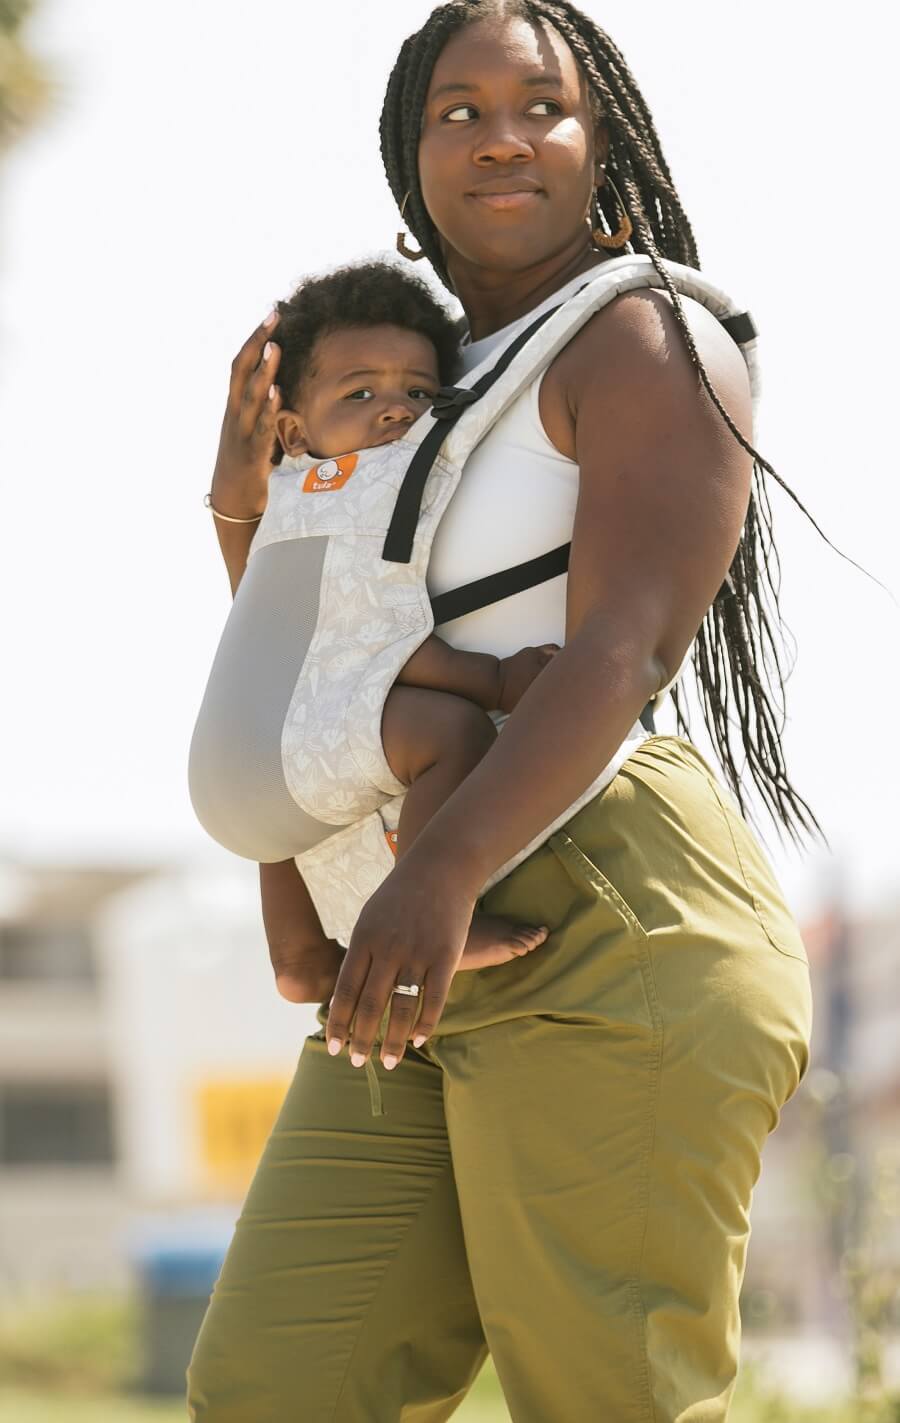 Mama nosi dziecko w ergonomicznym nosidełku Tula Free-to-Grow w pozycji przodem do rodzica.